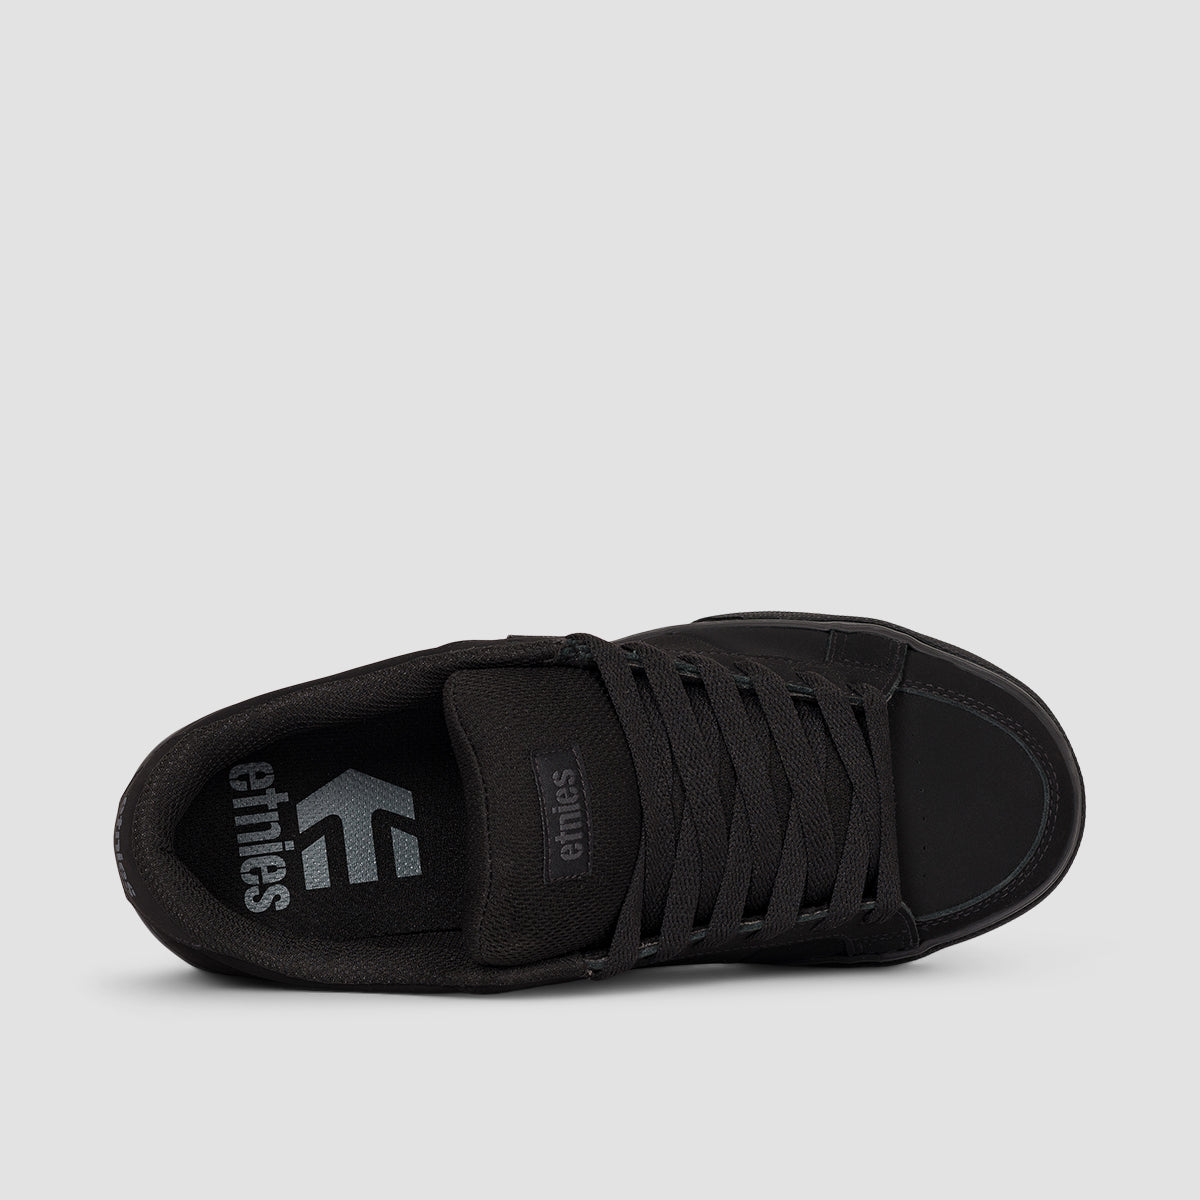 Etnies Kingpin Vulc Shoes - Black/Black